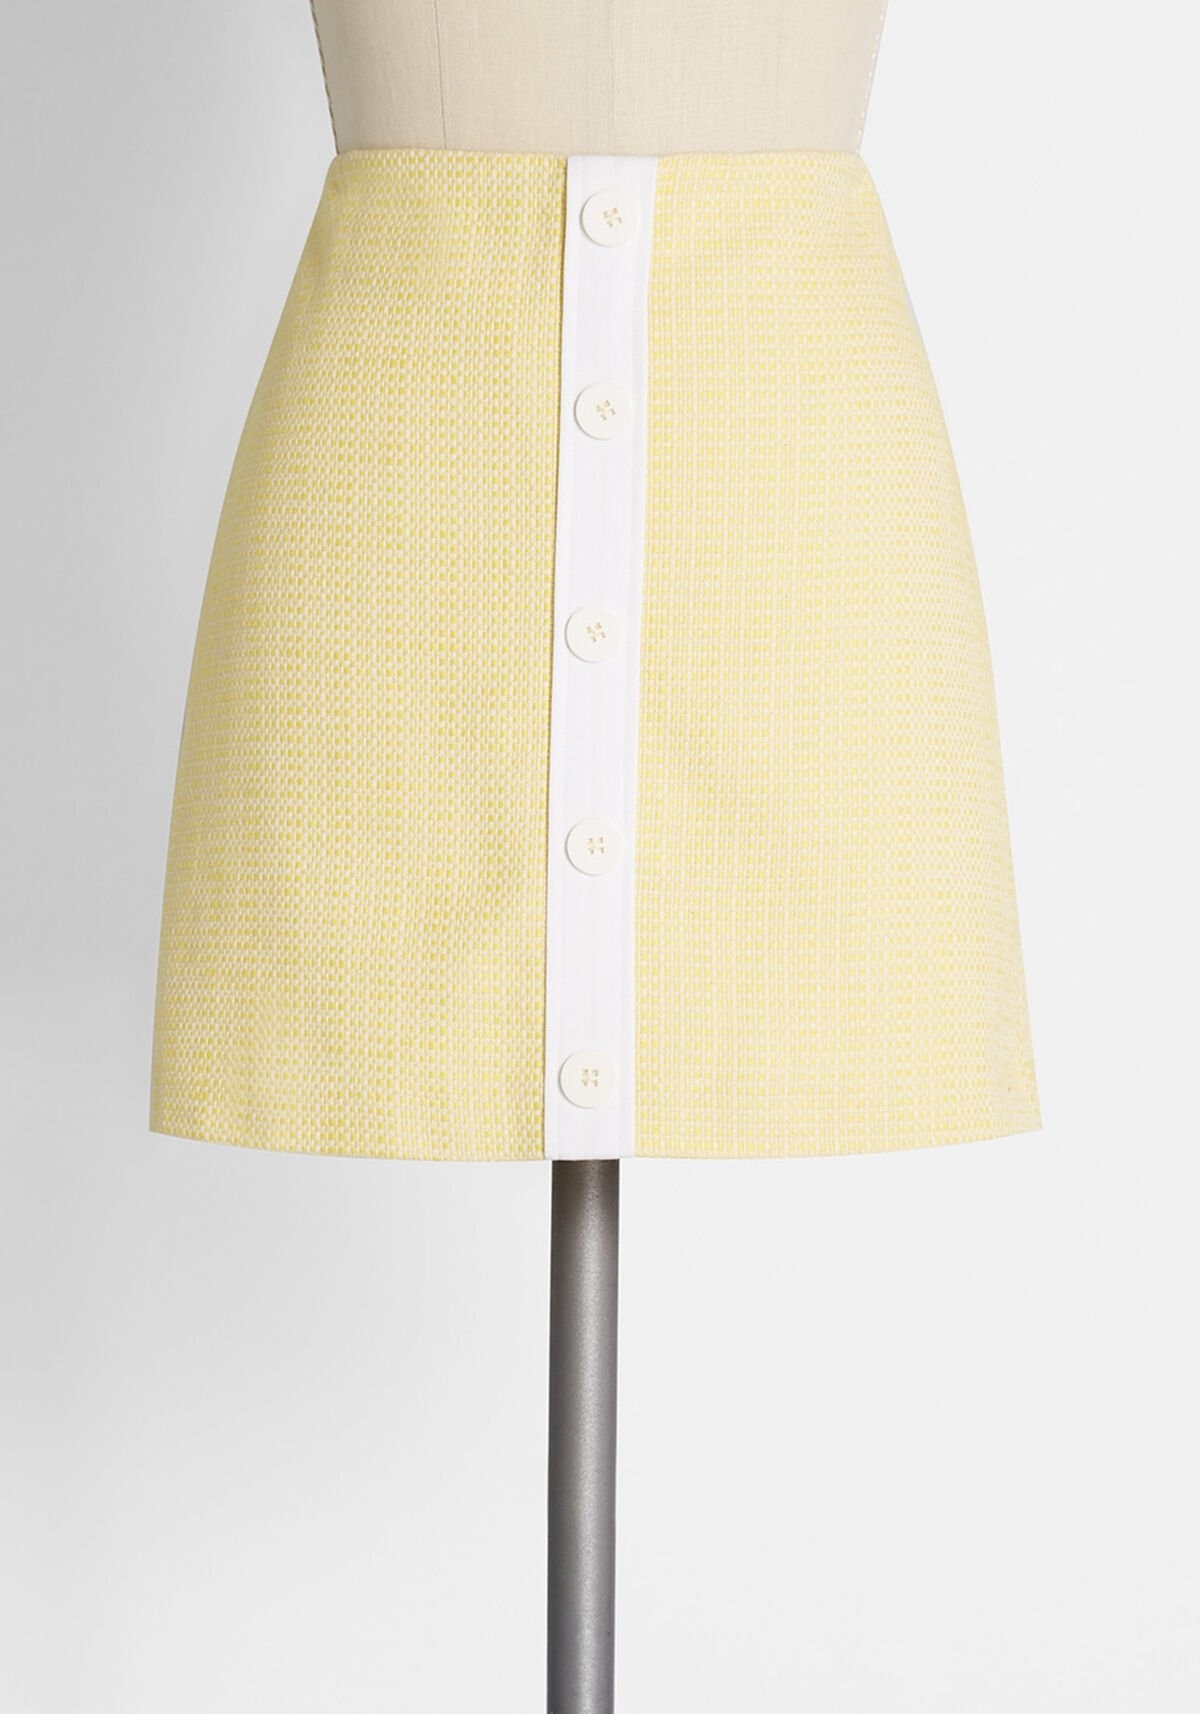 Vintage inspired skirt on mannequin